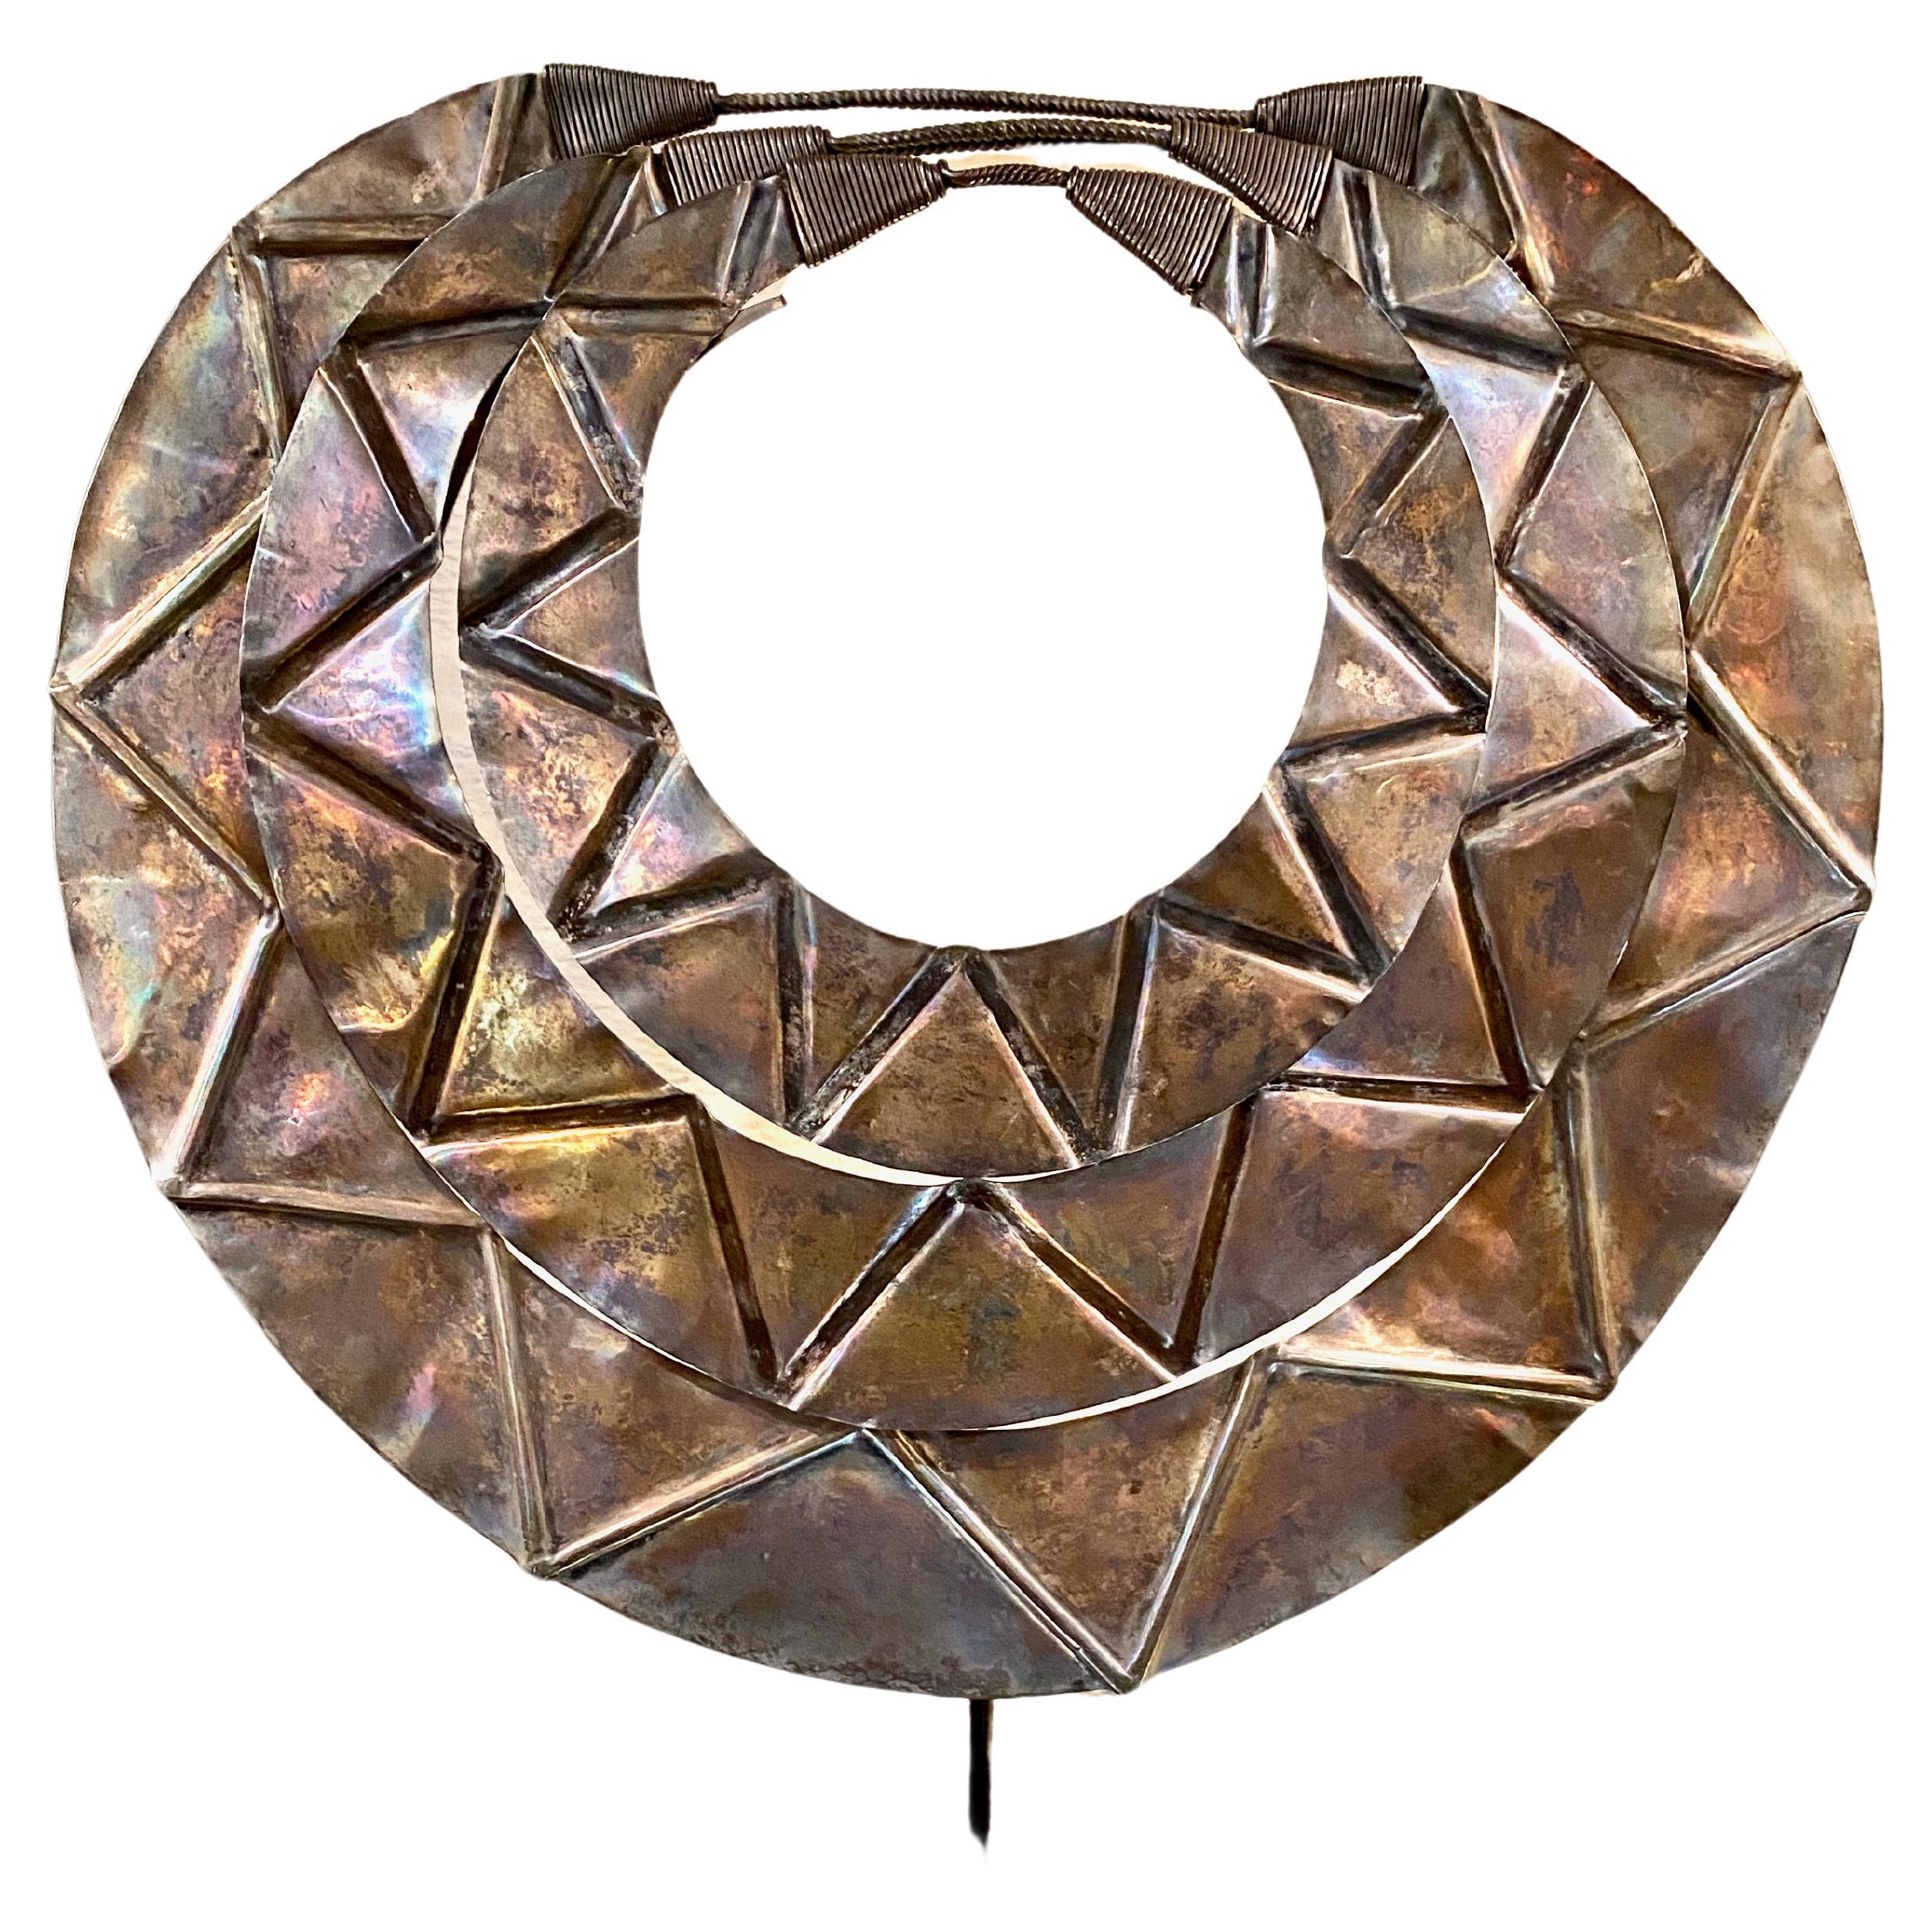 Il s'agit d'un anneau de cou en argent massif et inhabituel, provenant d'un groupe tribal de la région montagneuse du triangle d'or du Laos, de la Thaïlande et de la Birmanie. L'anneau est conçu comme une amulette protectrice empêchant l'esprit de